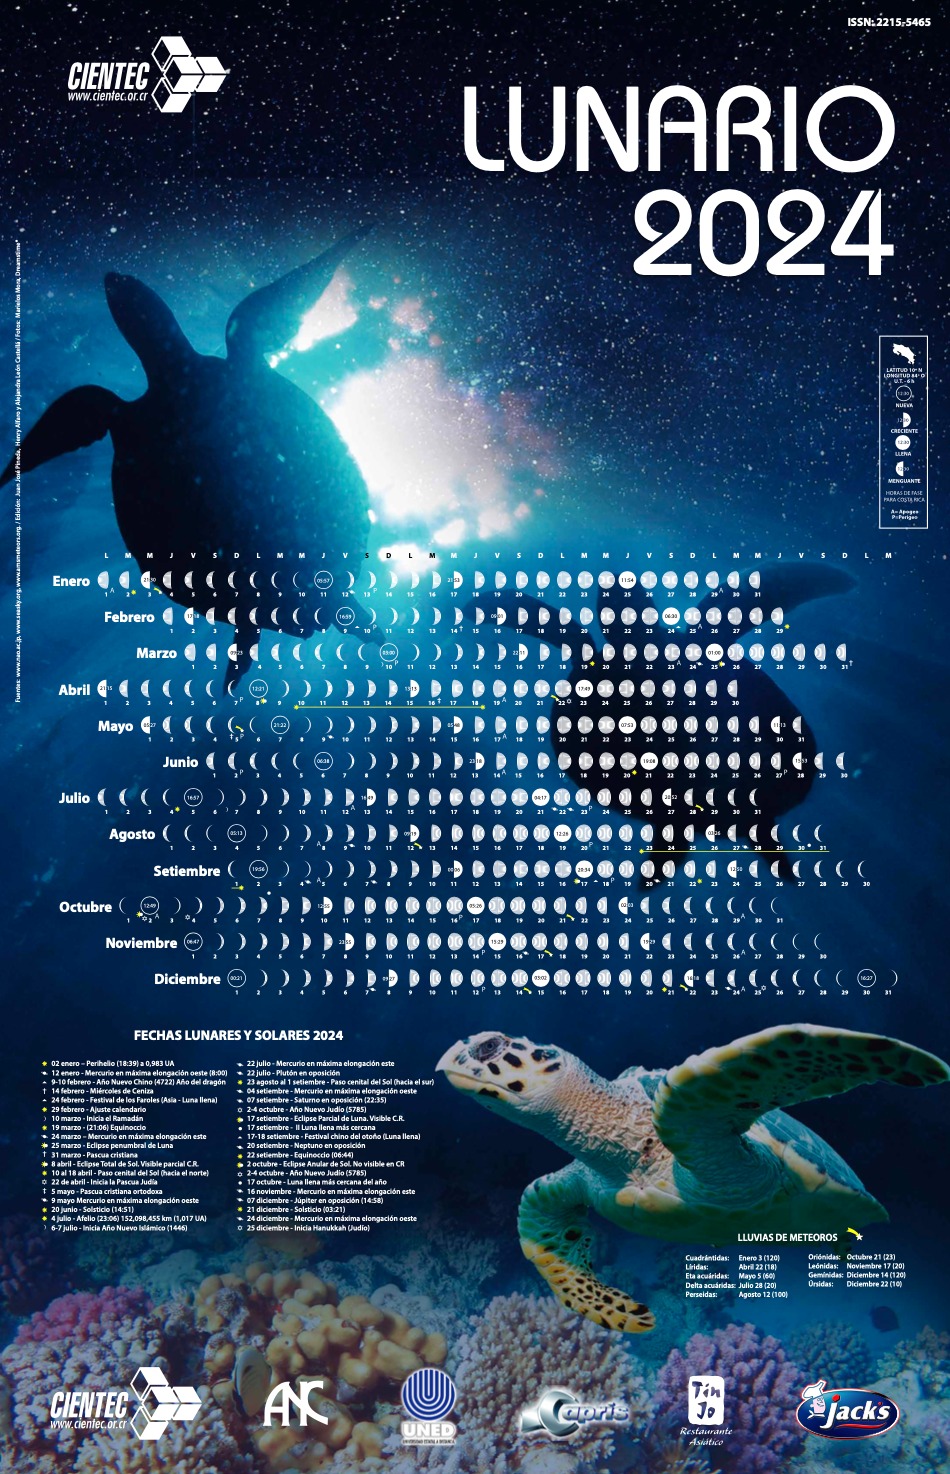 Lunario 2024 dedicado a las tortugas marinas